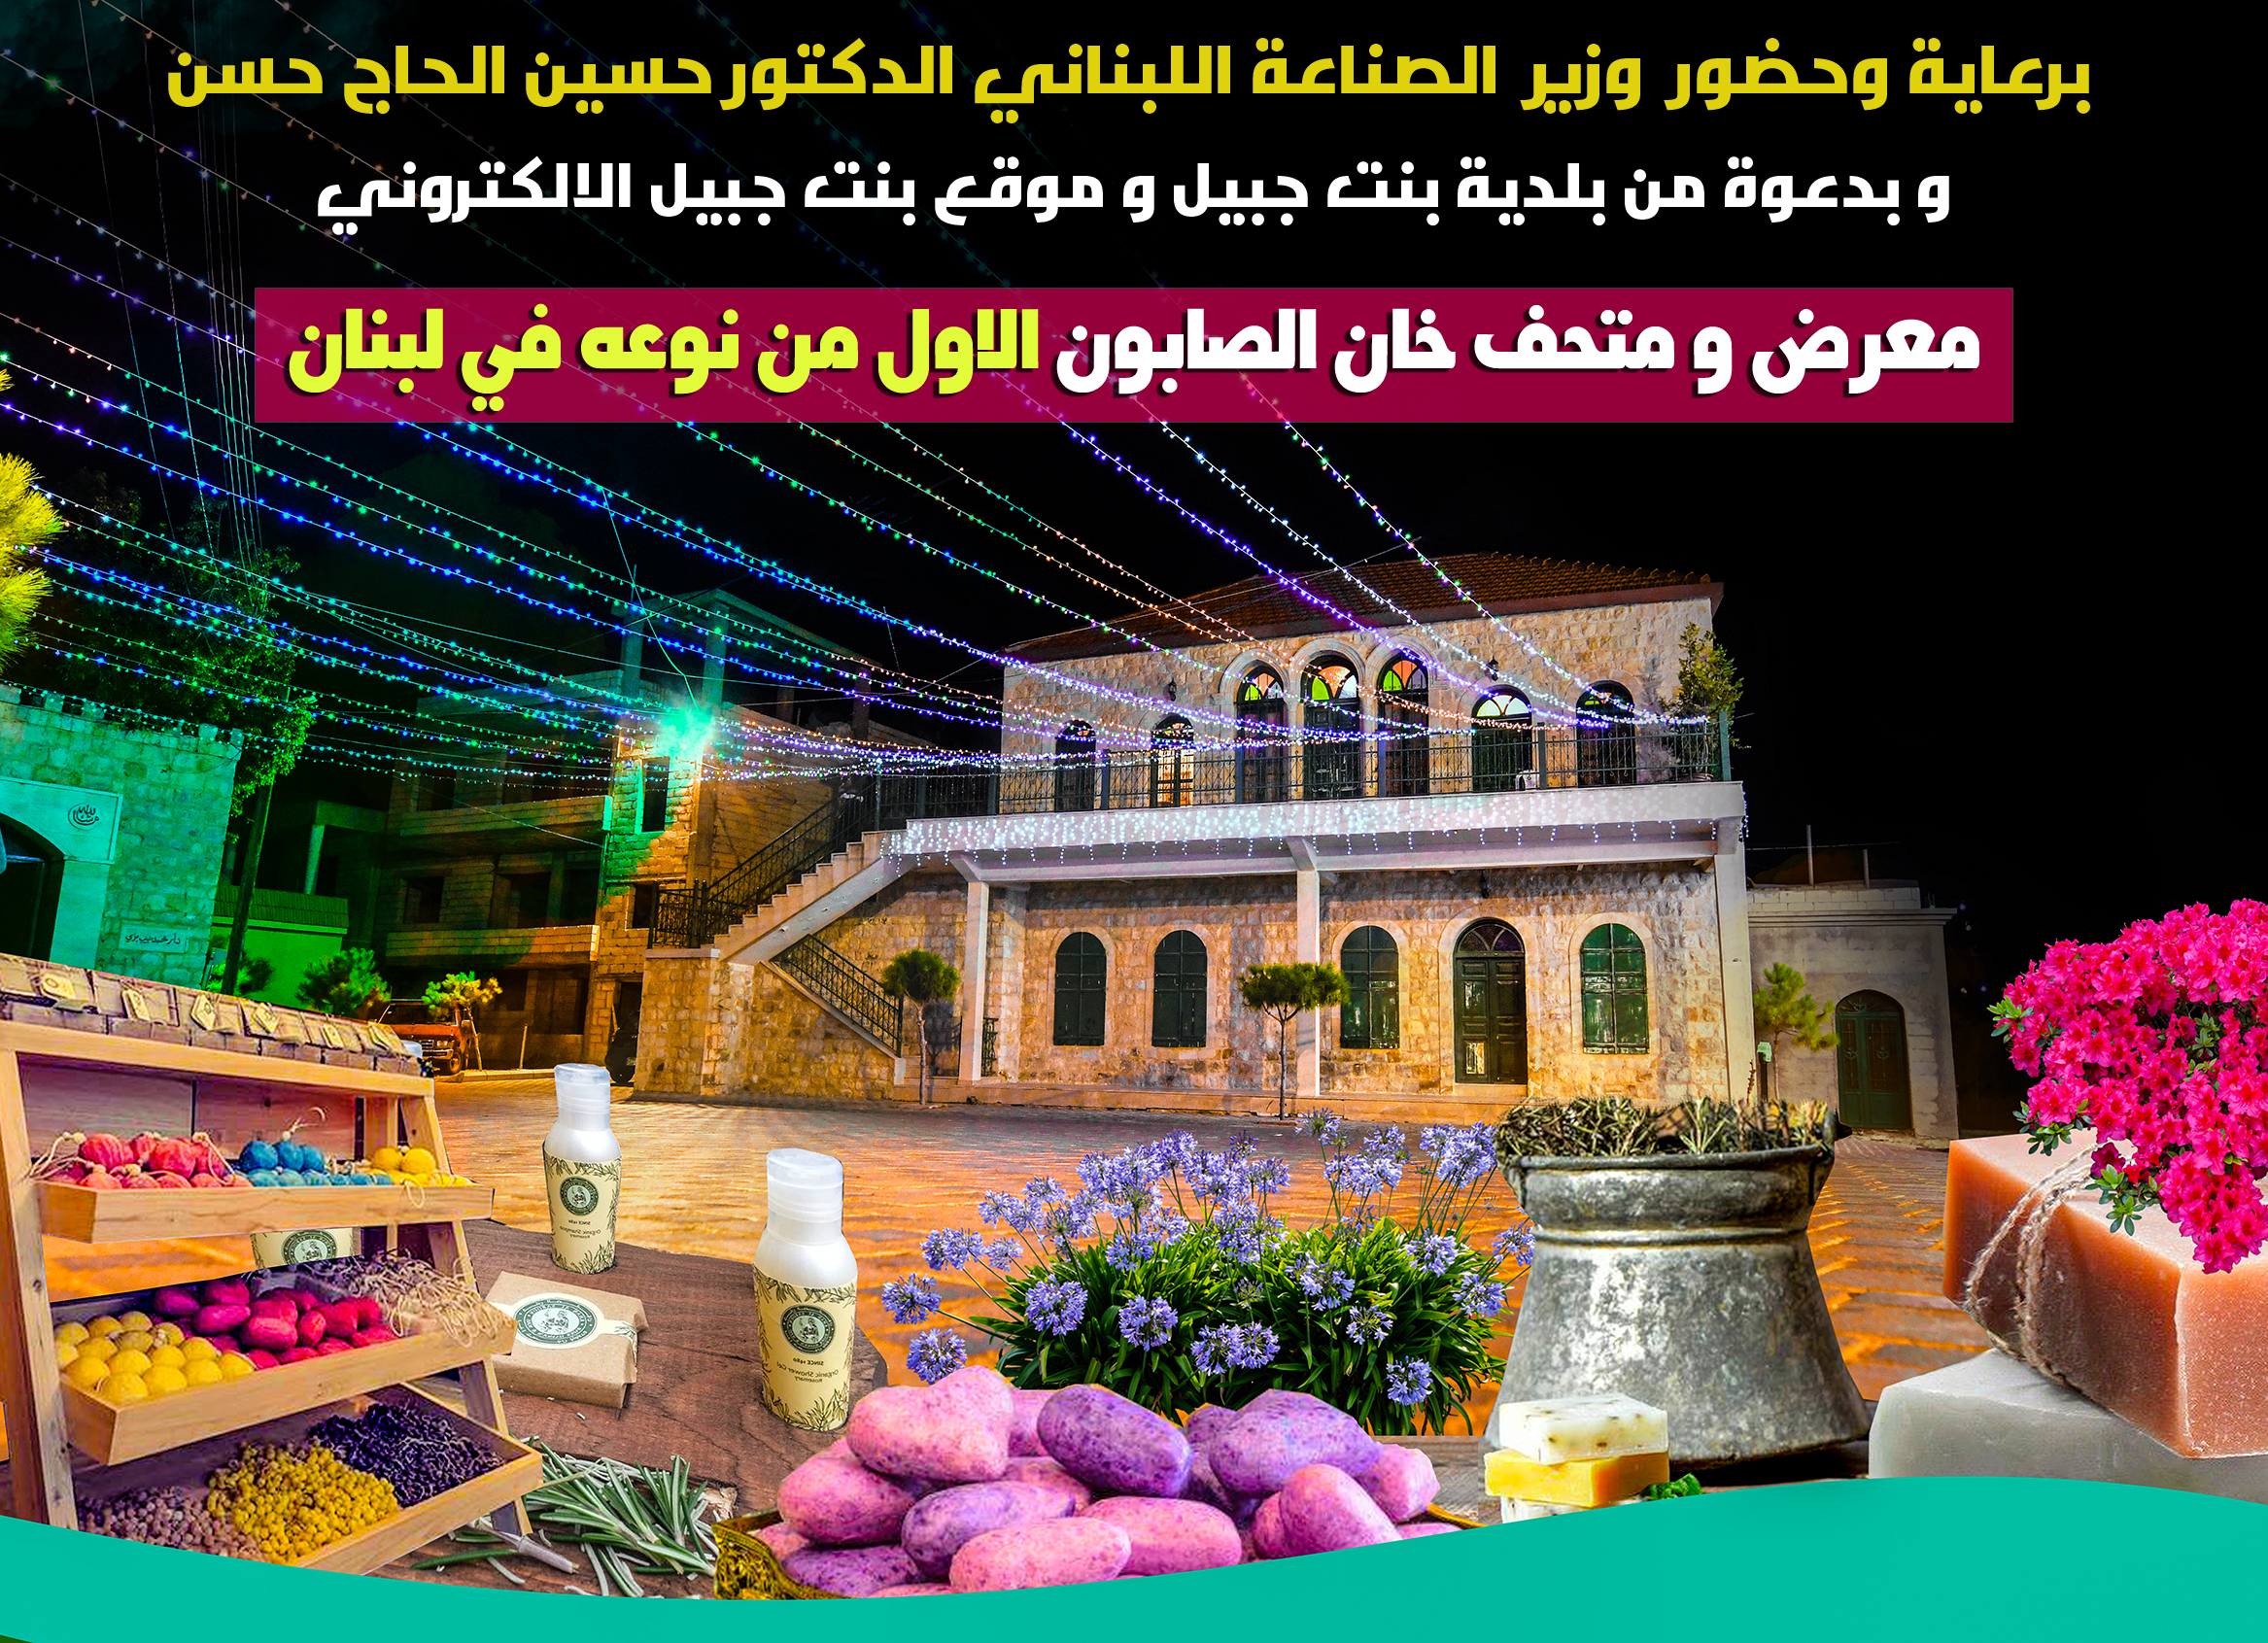 بانتظاركم يوم غد السبت والأحد 28 و29 تموز في بنت جبيل-حاكورة مع اكبر عرض حي لصناعة الصابون والزيوت